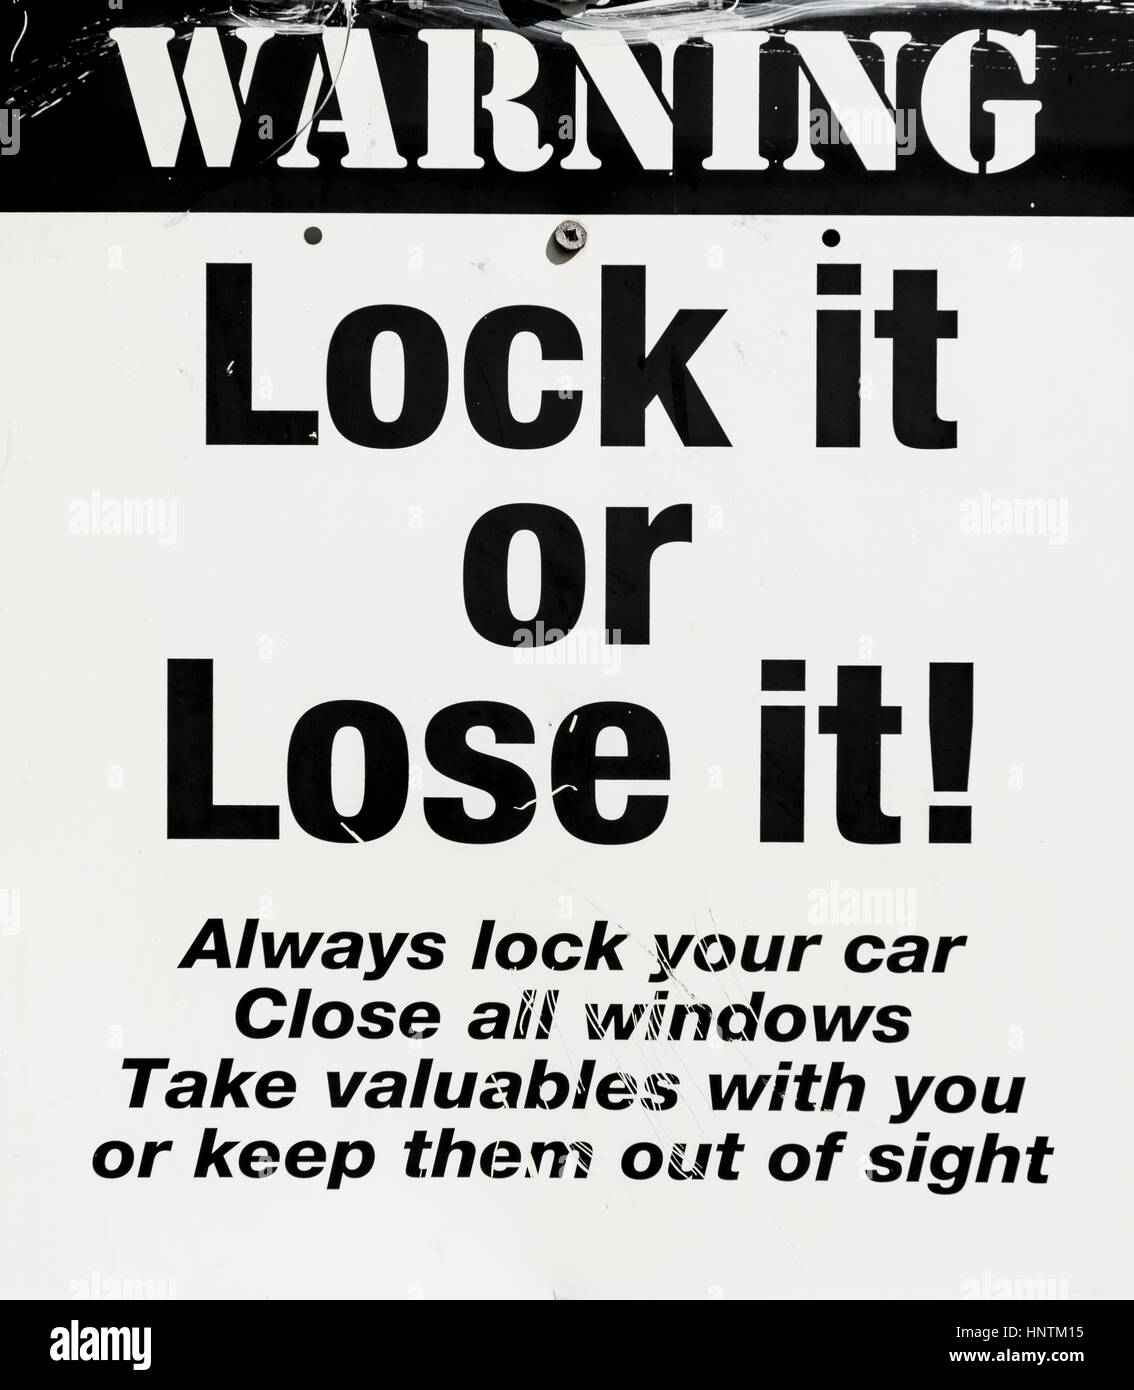 Segnale di avviso, bloccarlo o perderlo, il furto di auto, avvertimento contro i ladri, Nuova Zelanda Foto Stock